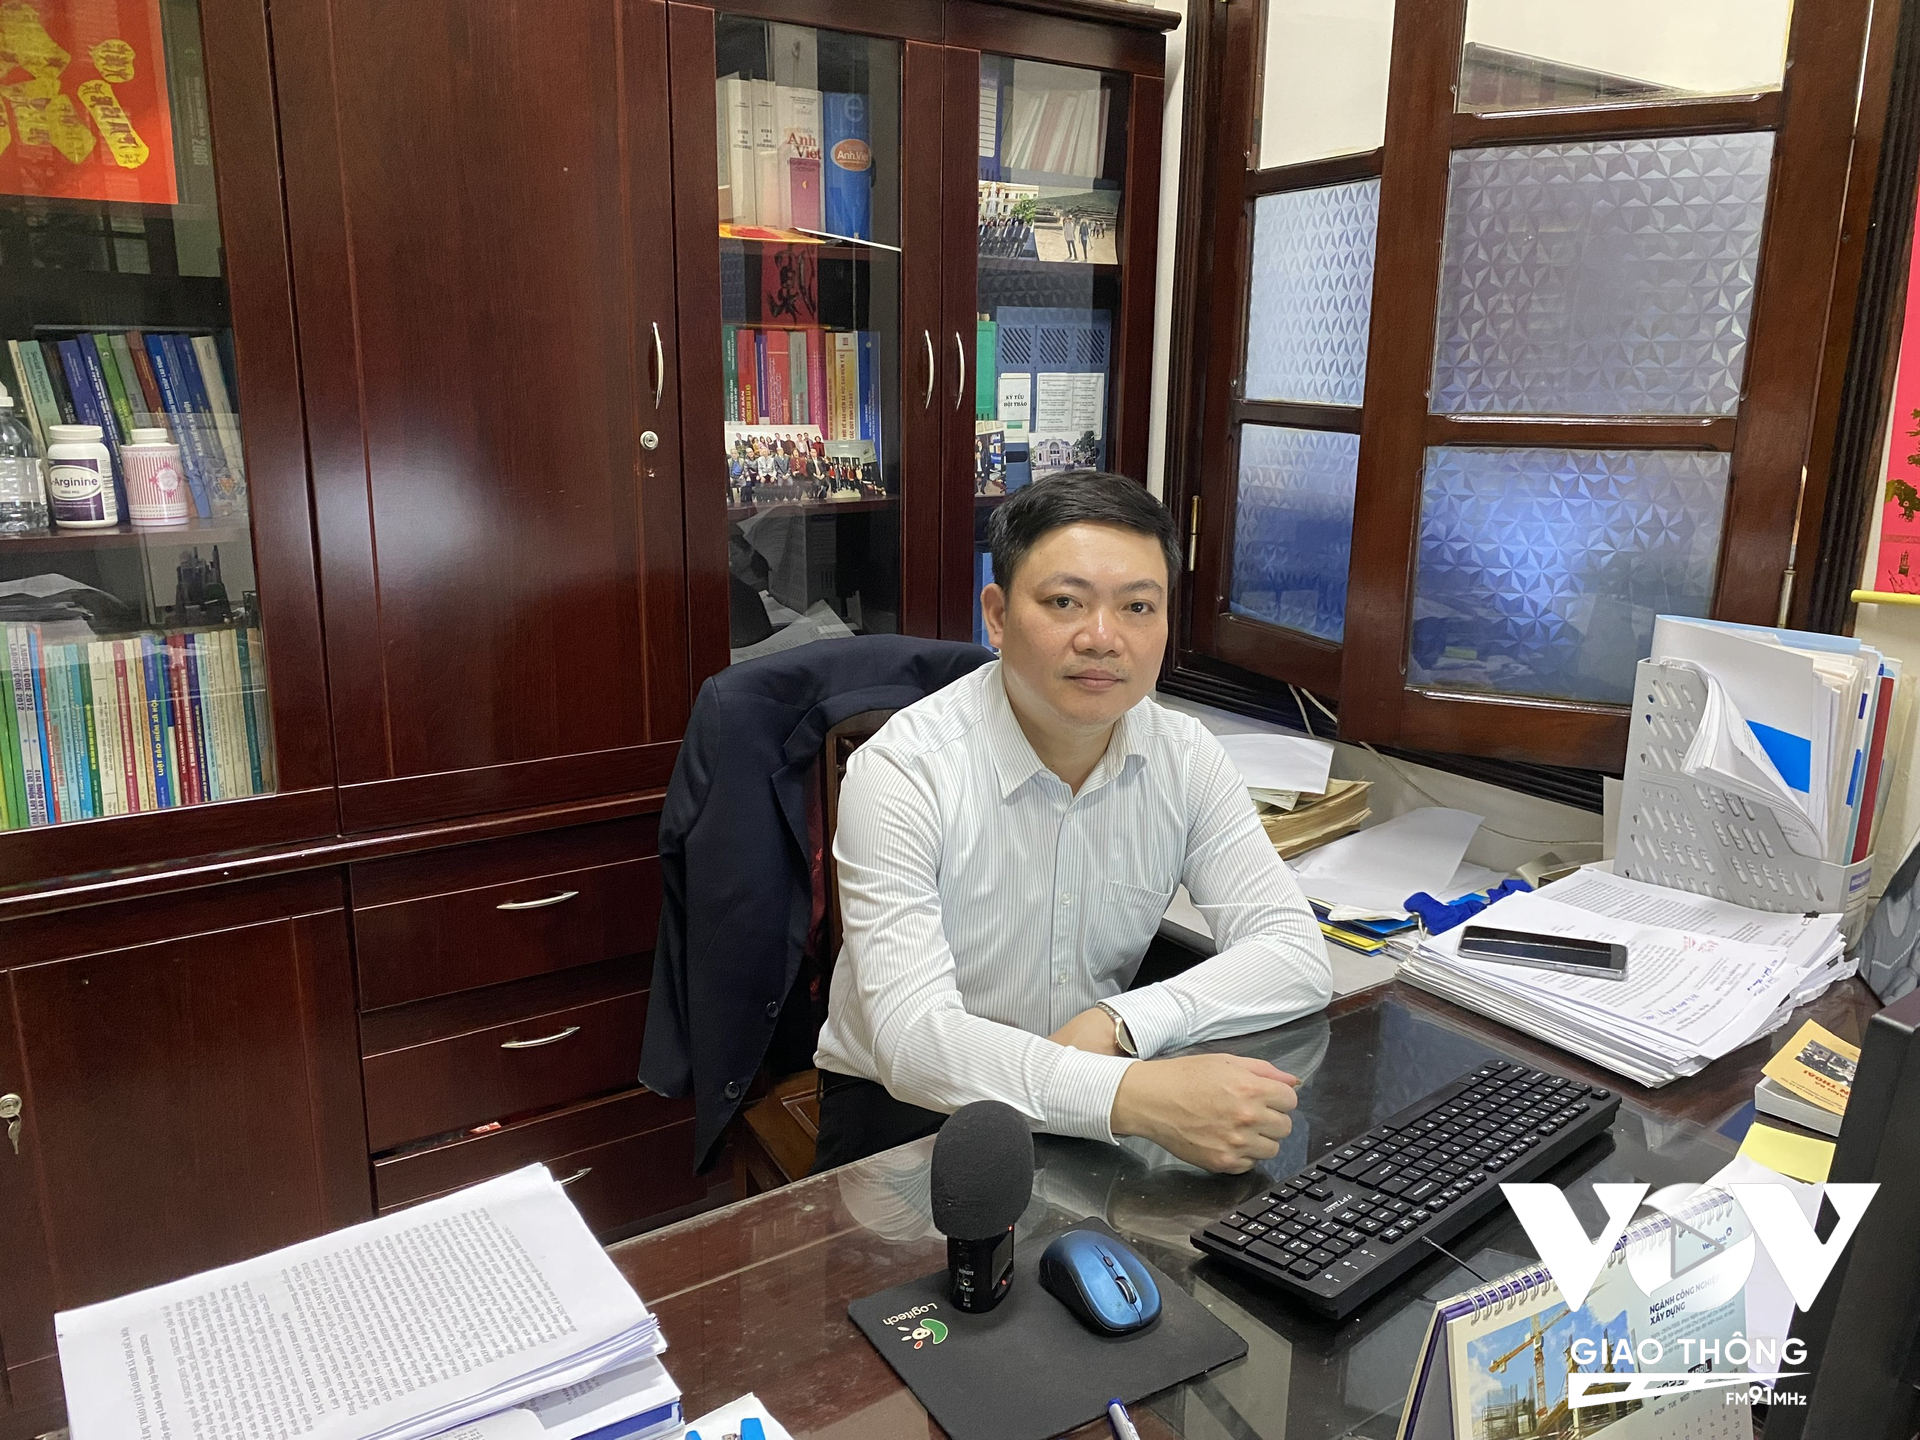 Ông Nguyễn Duy Cường, Phó Vụ trưởng Vụ Bảo hiểm xã hội, Bộ Lao động và Thương binh xã hội. Ảnh: Hải Hà